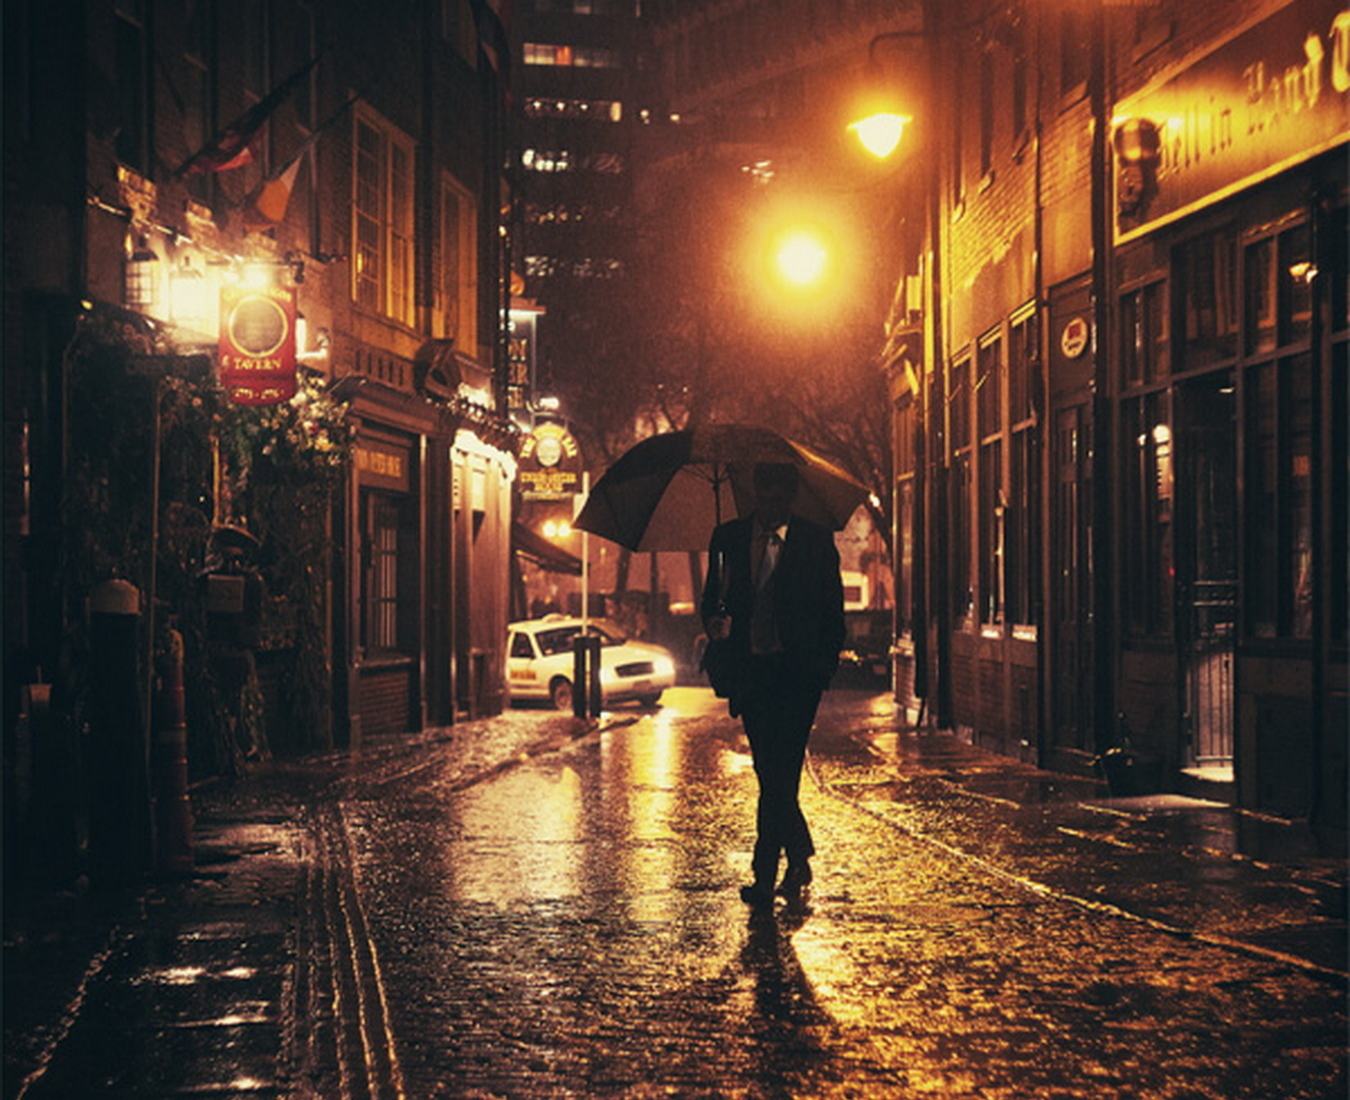 Гулять поздно вечером. Люди на улице вечером. "Дождливый вечер". Парень идет по улице. Человек бредет по улице.